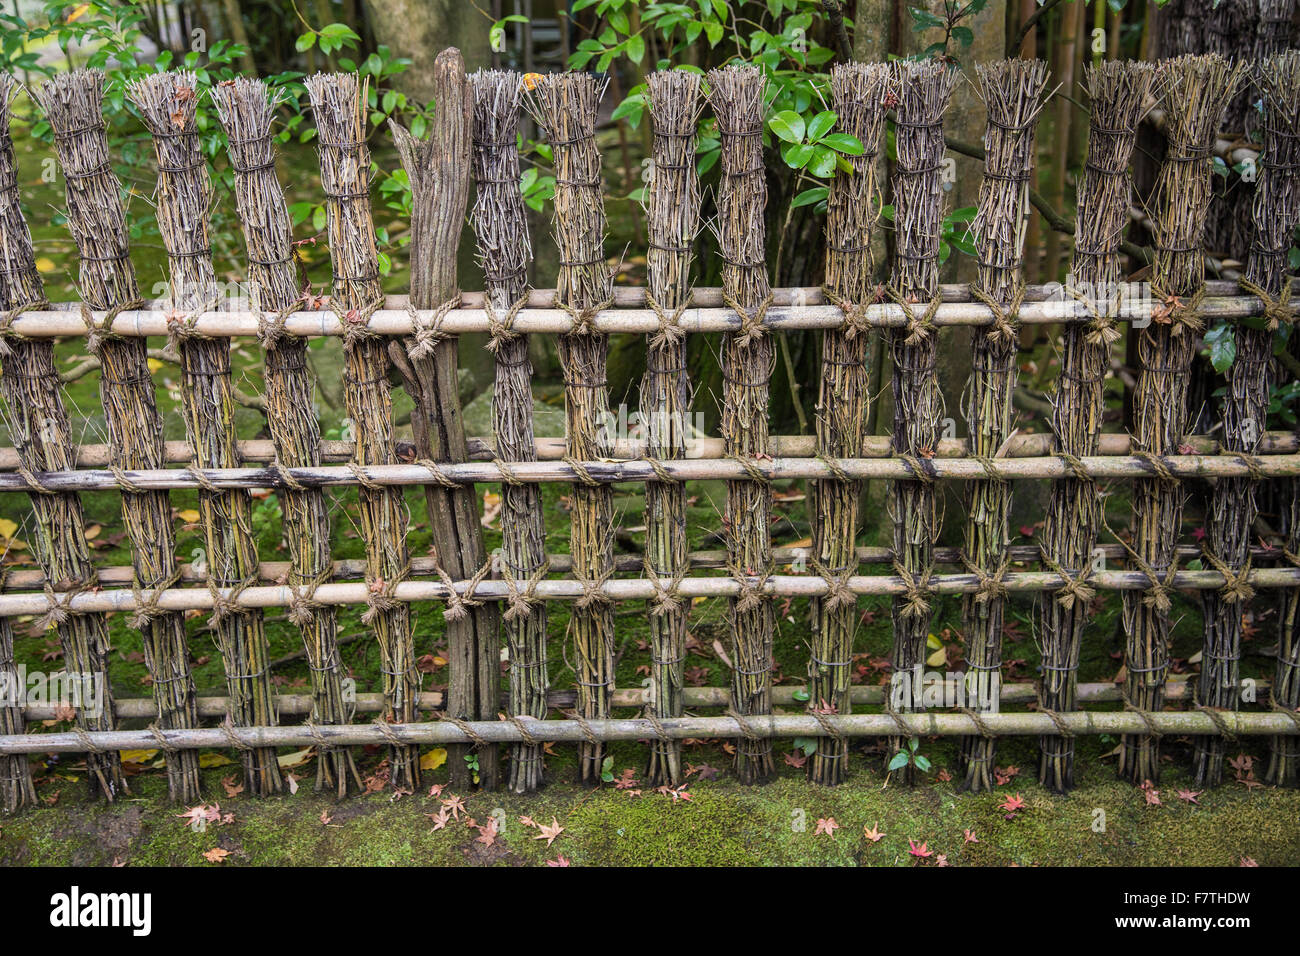 Zäune und Bildschirme - Kakine oder Kaki - sind aus Bambus, Holz und Äste werden verwendet, um Abschnitte eines japanischen Gartens definieren Stockfoto